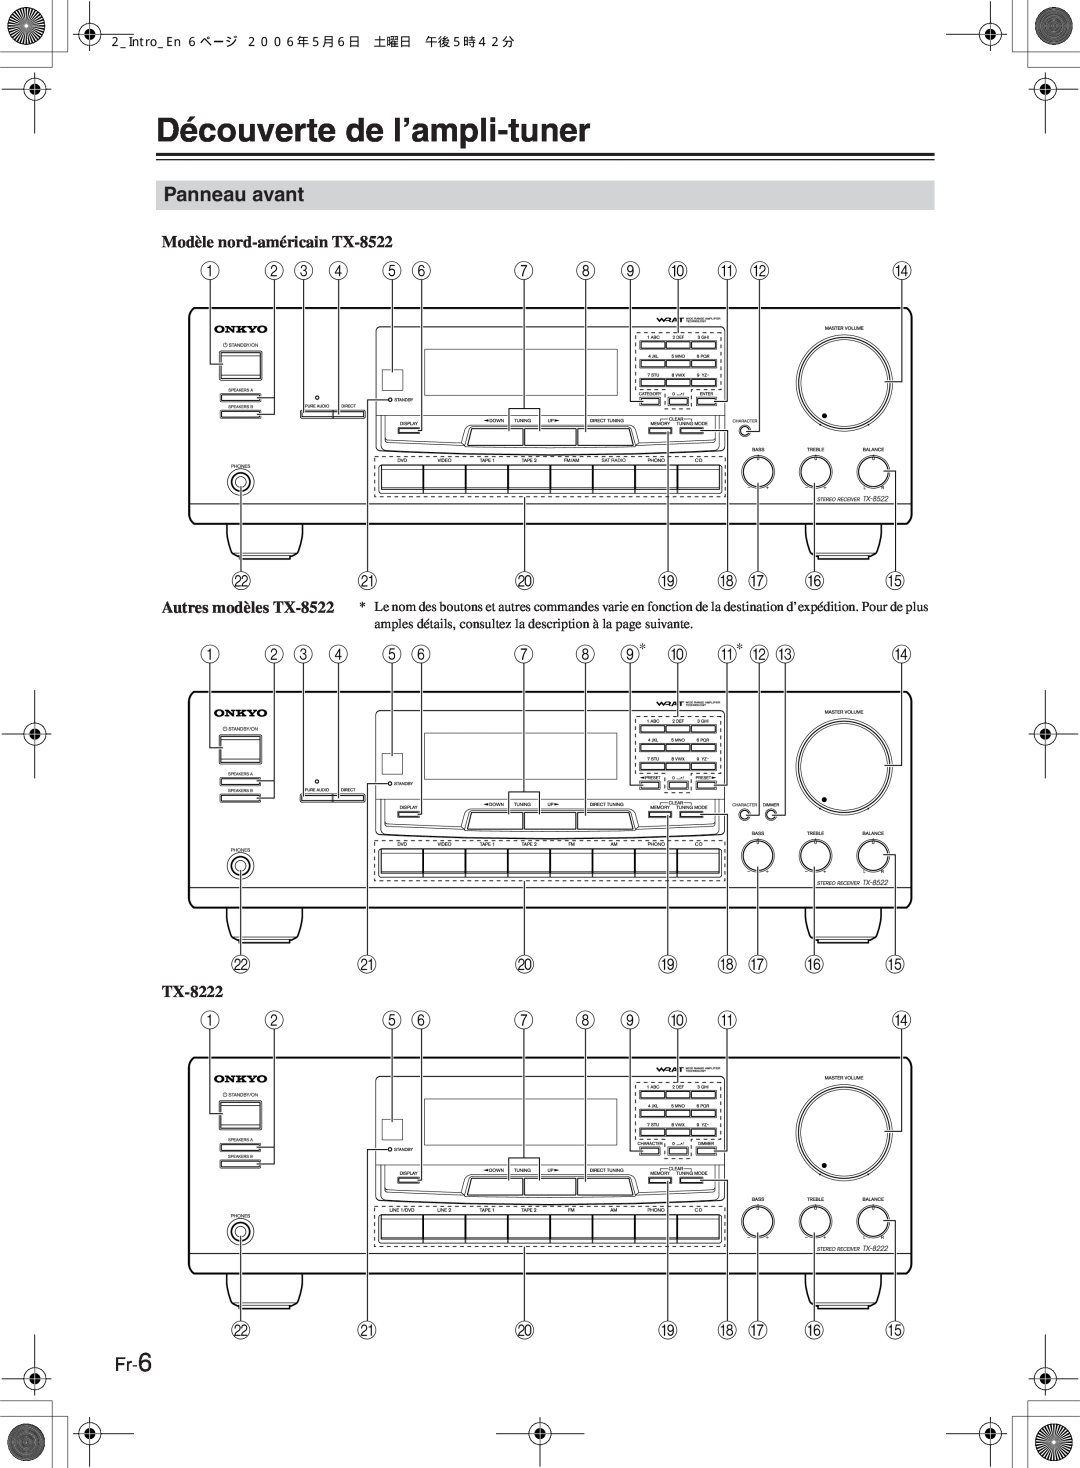 Onkyo TX-8222, TX-8522 manual Découverte de l’ampli-tuner, Panneau avant 